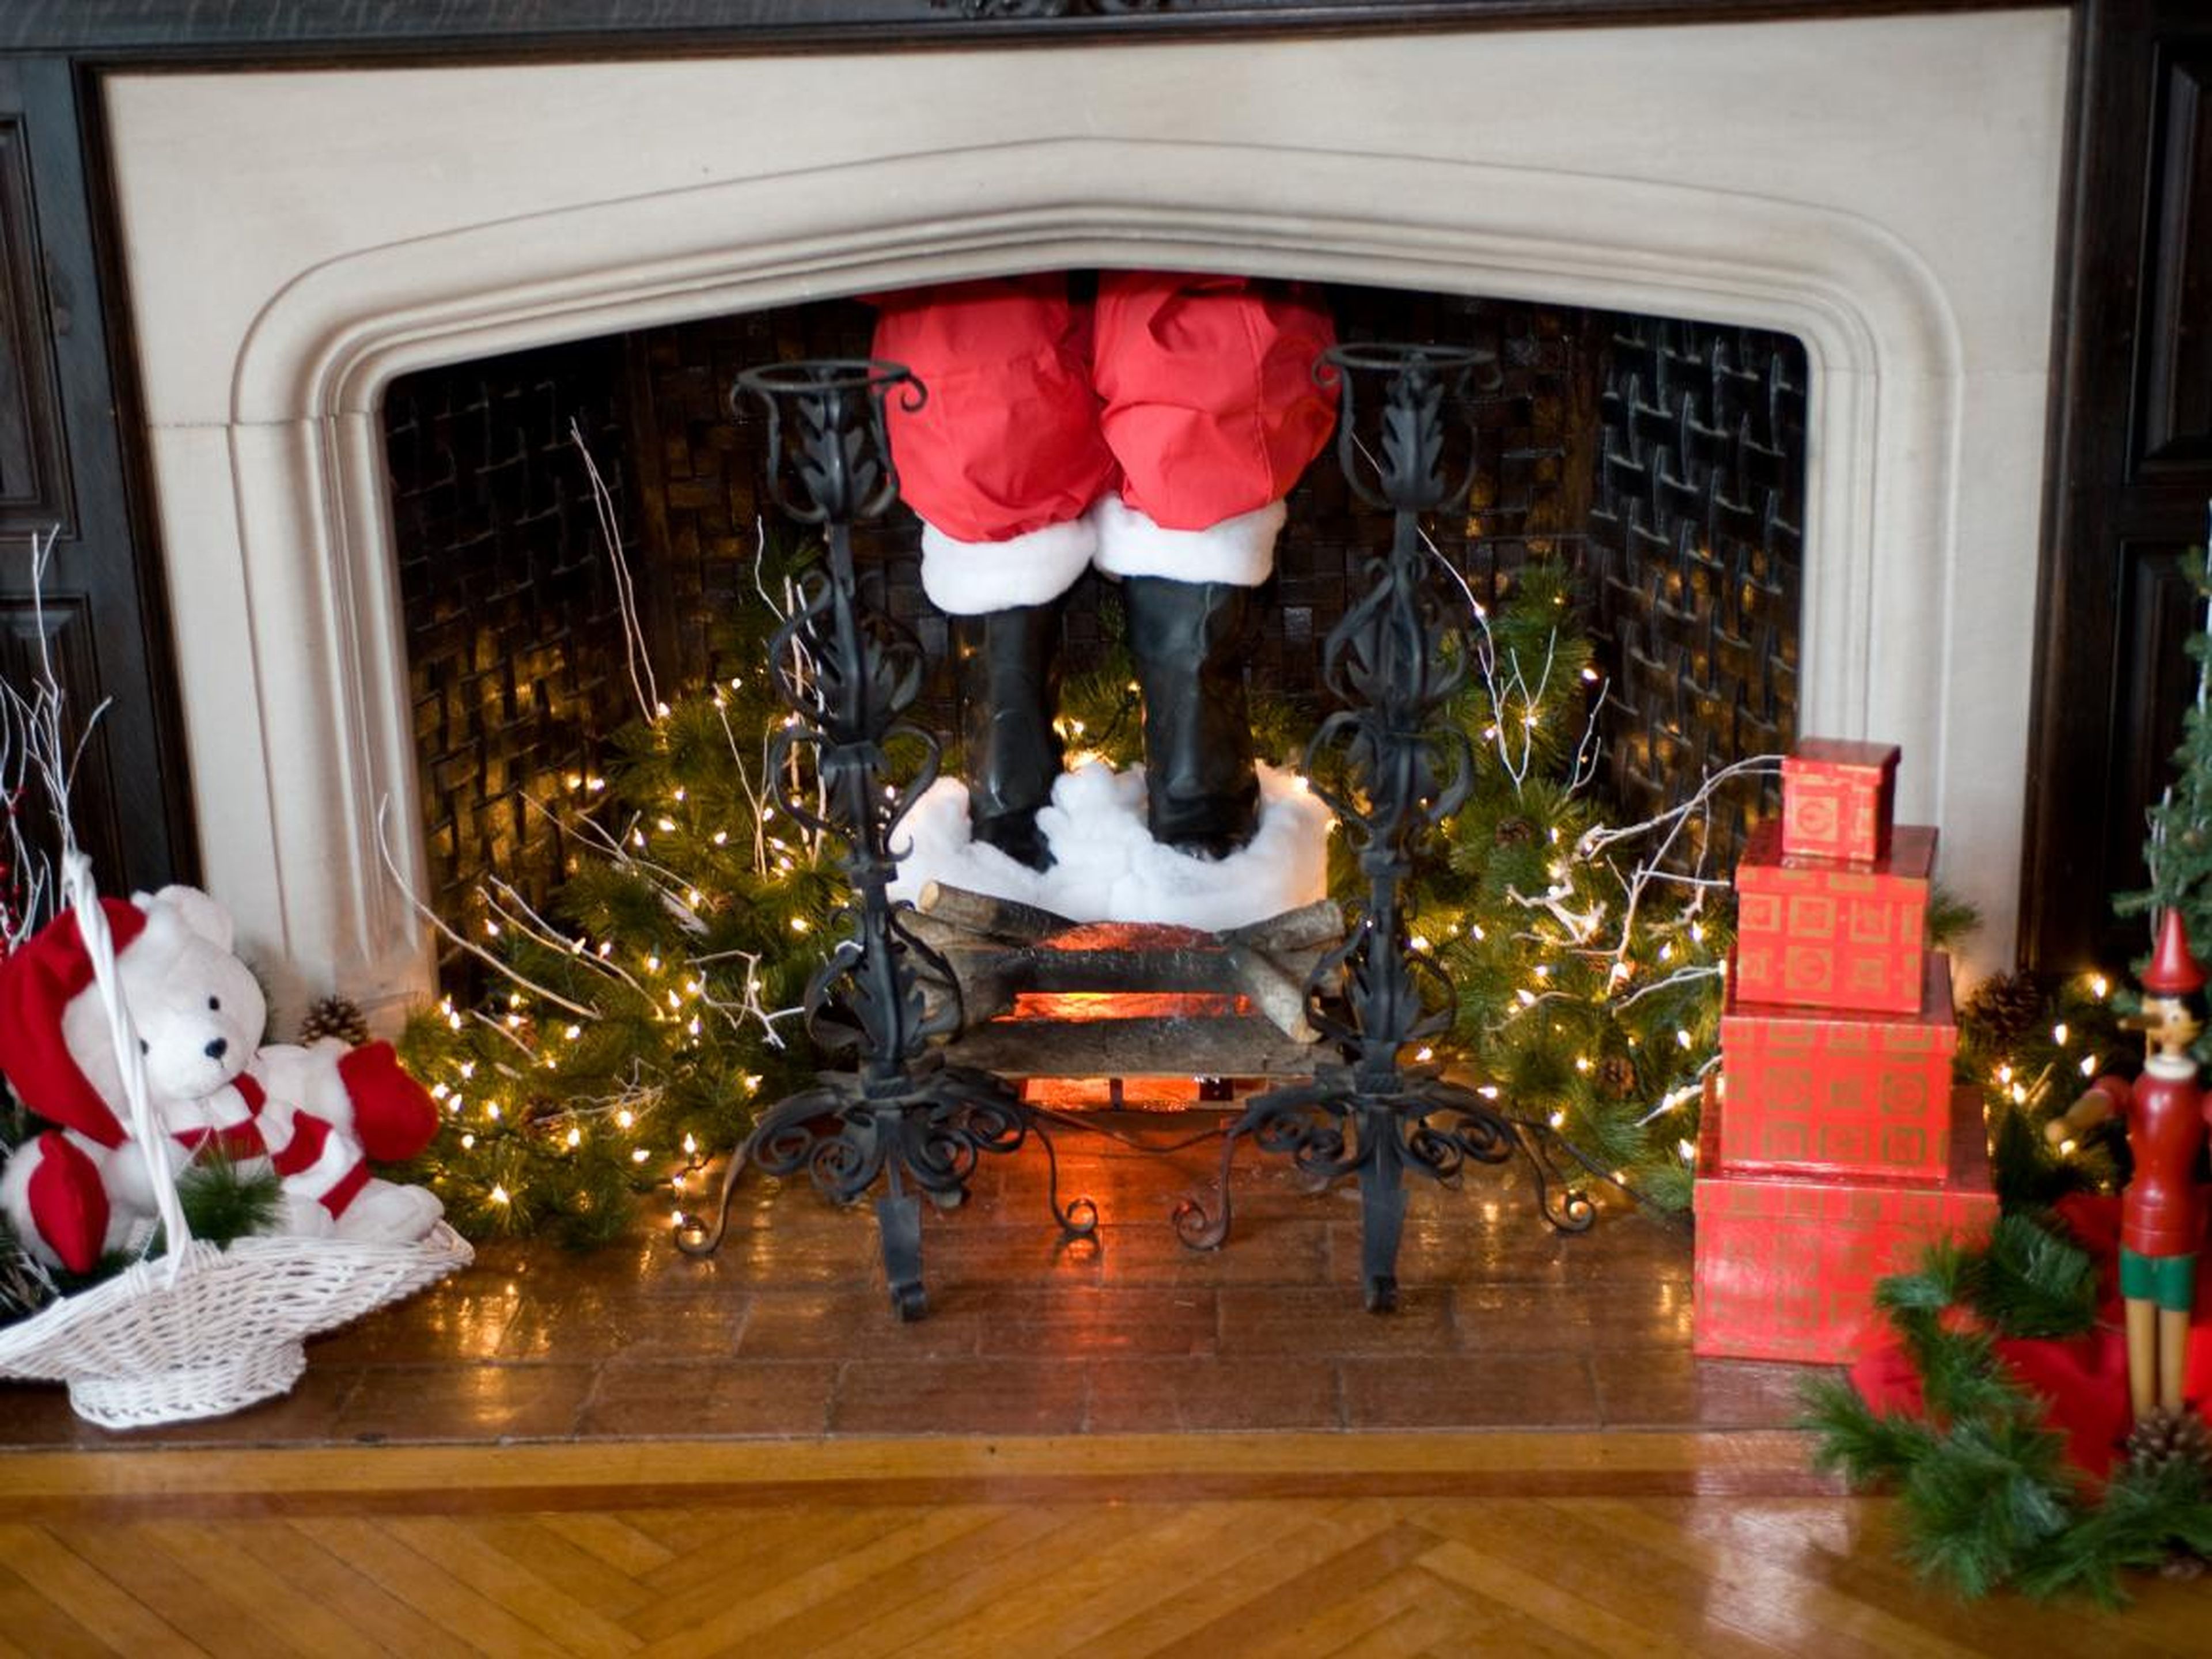 Papá Noel es la única persona/cosa que ha bajado por la chimenea en las leyendas urbanas.